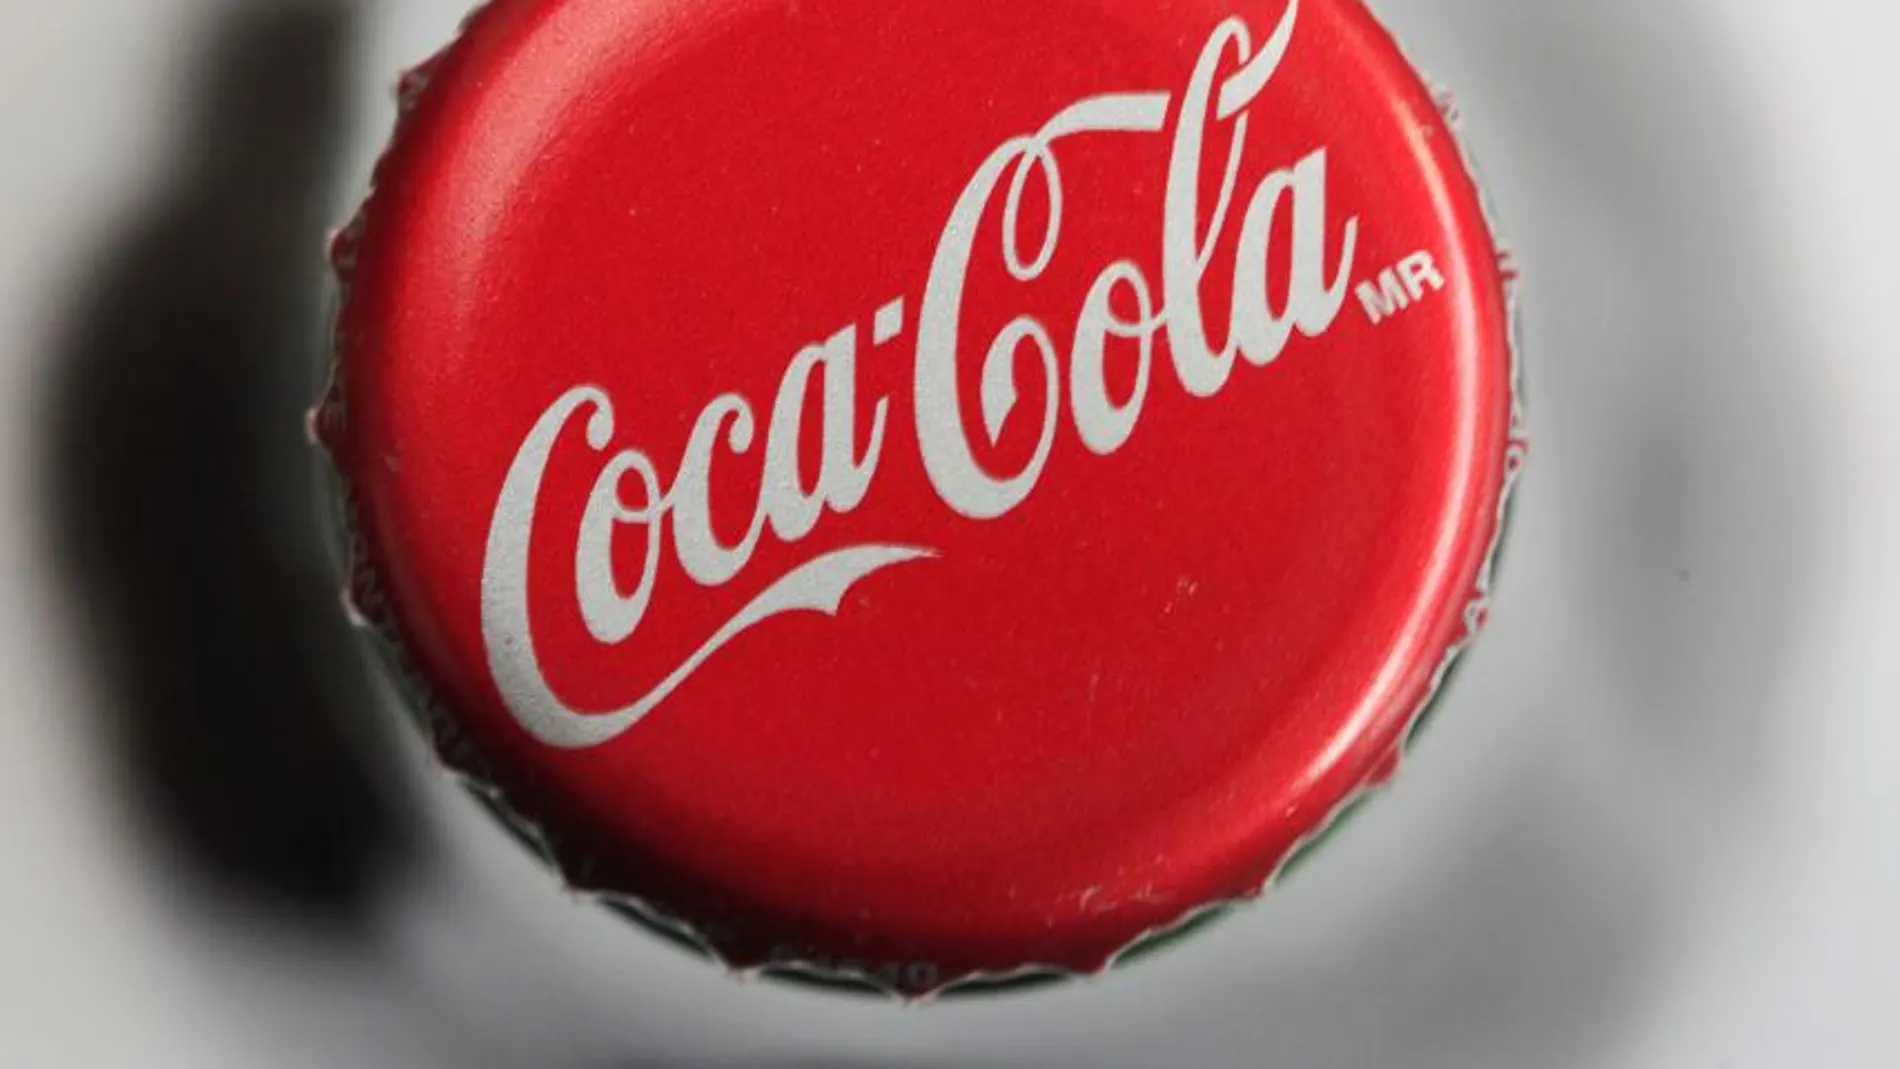 Logotipo de Coca-Cola en la chapa de una botella de esta popular bebida.